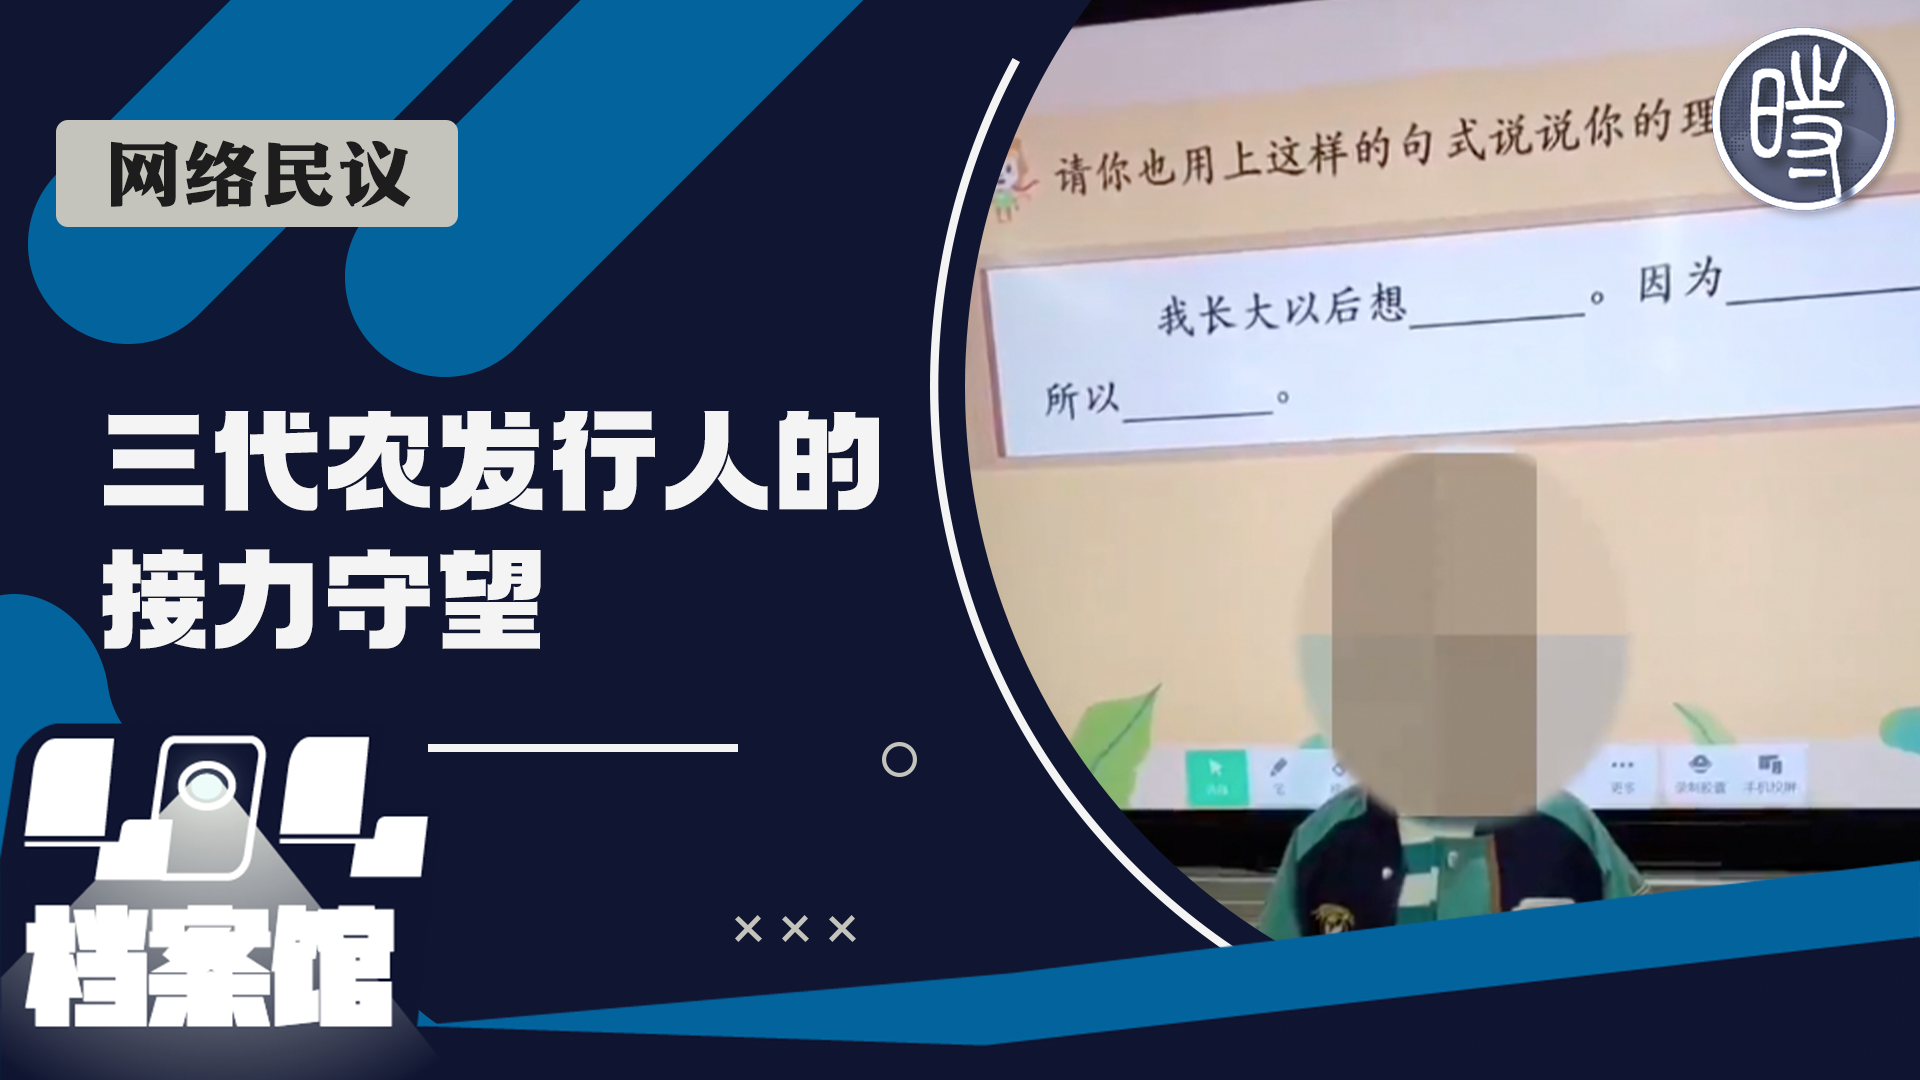 【CDTV】“我长大要当中国农业发展银行行长，继承家产”